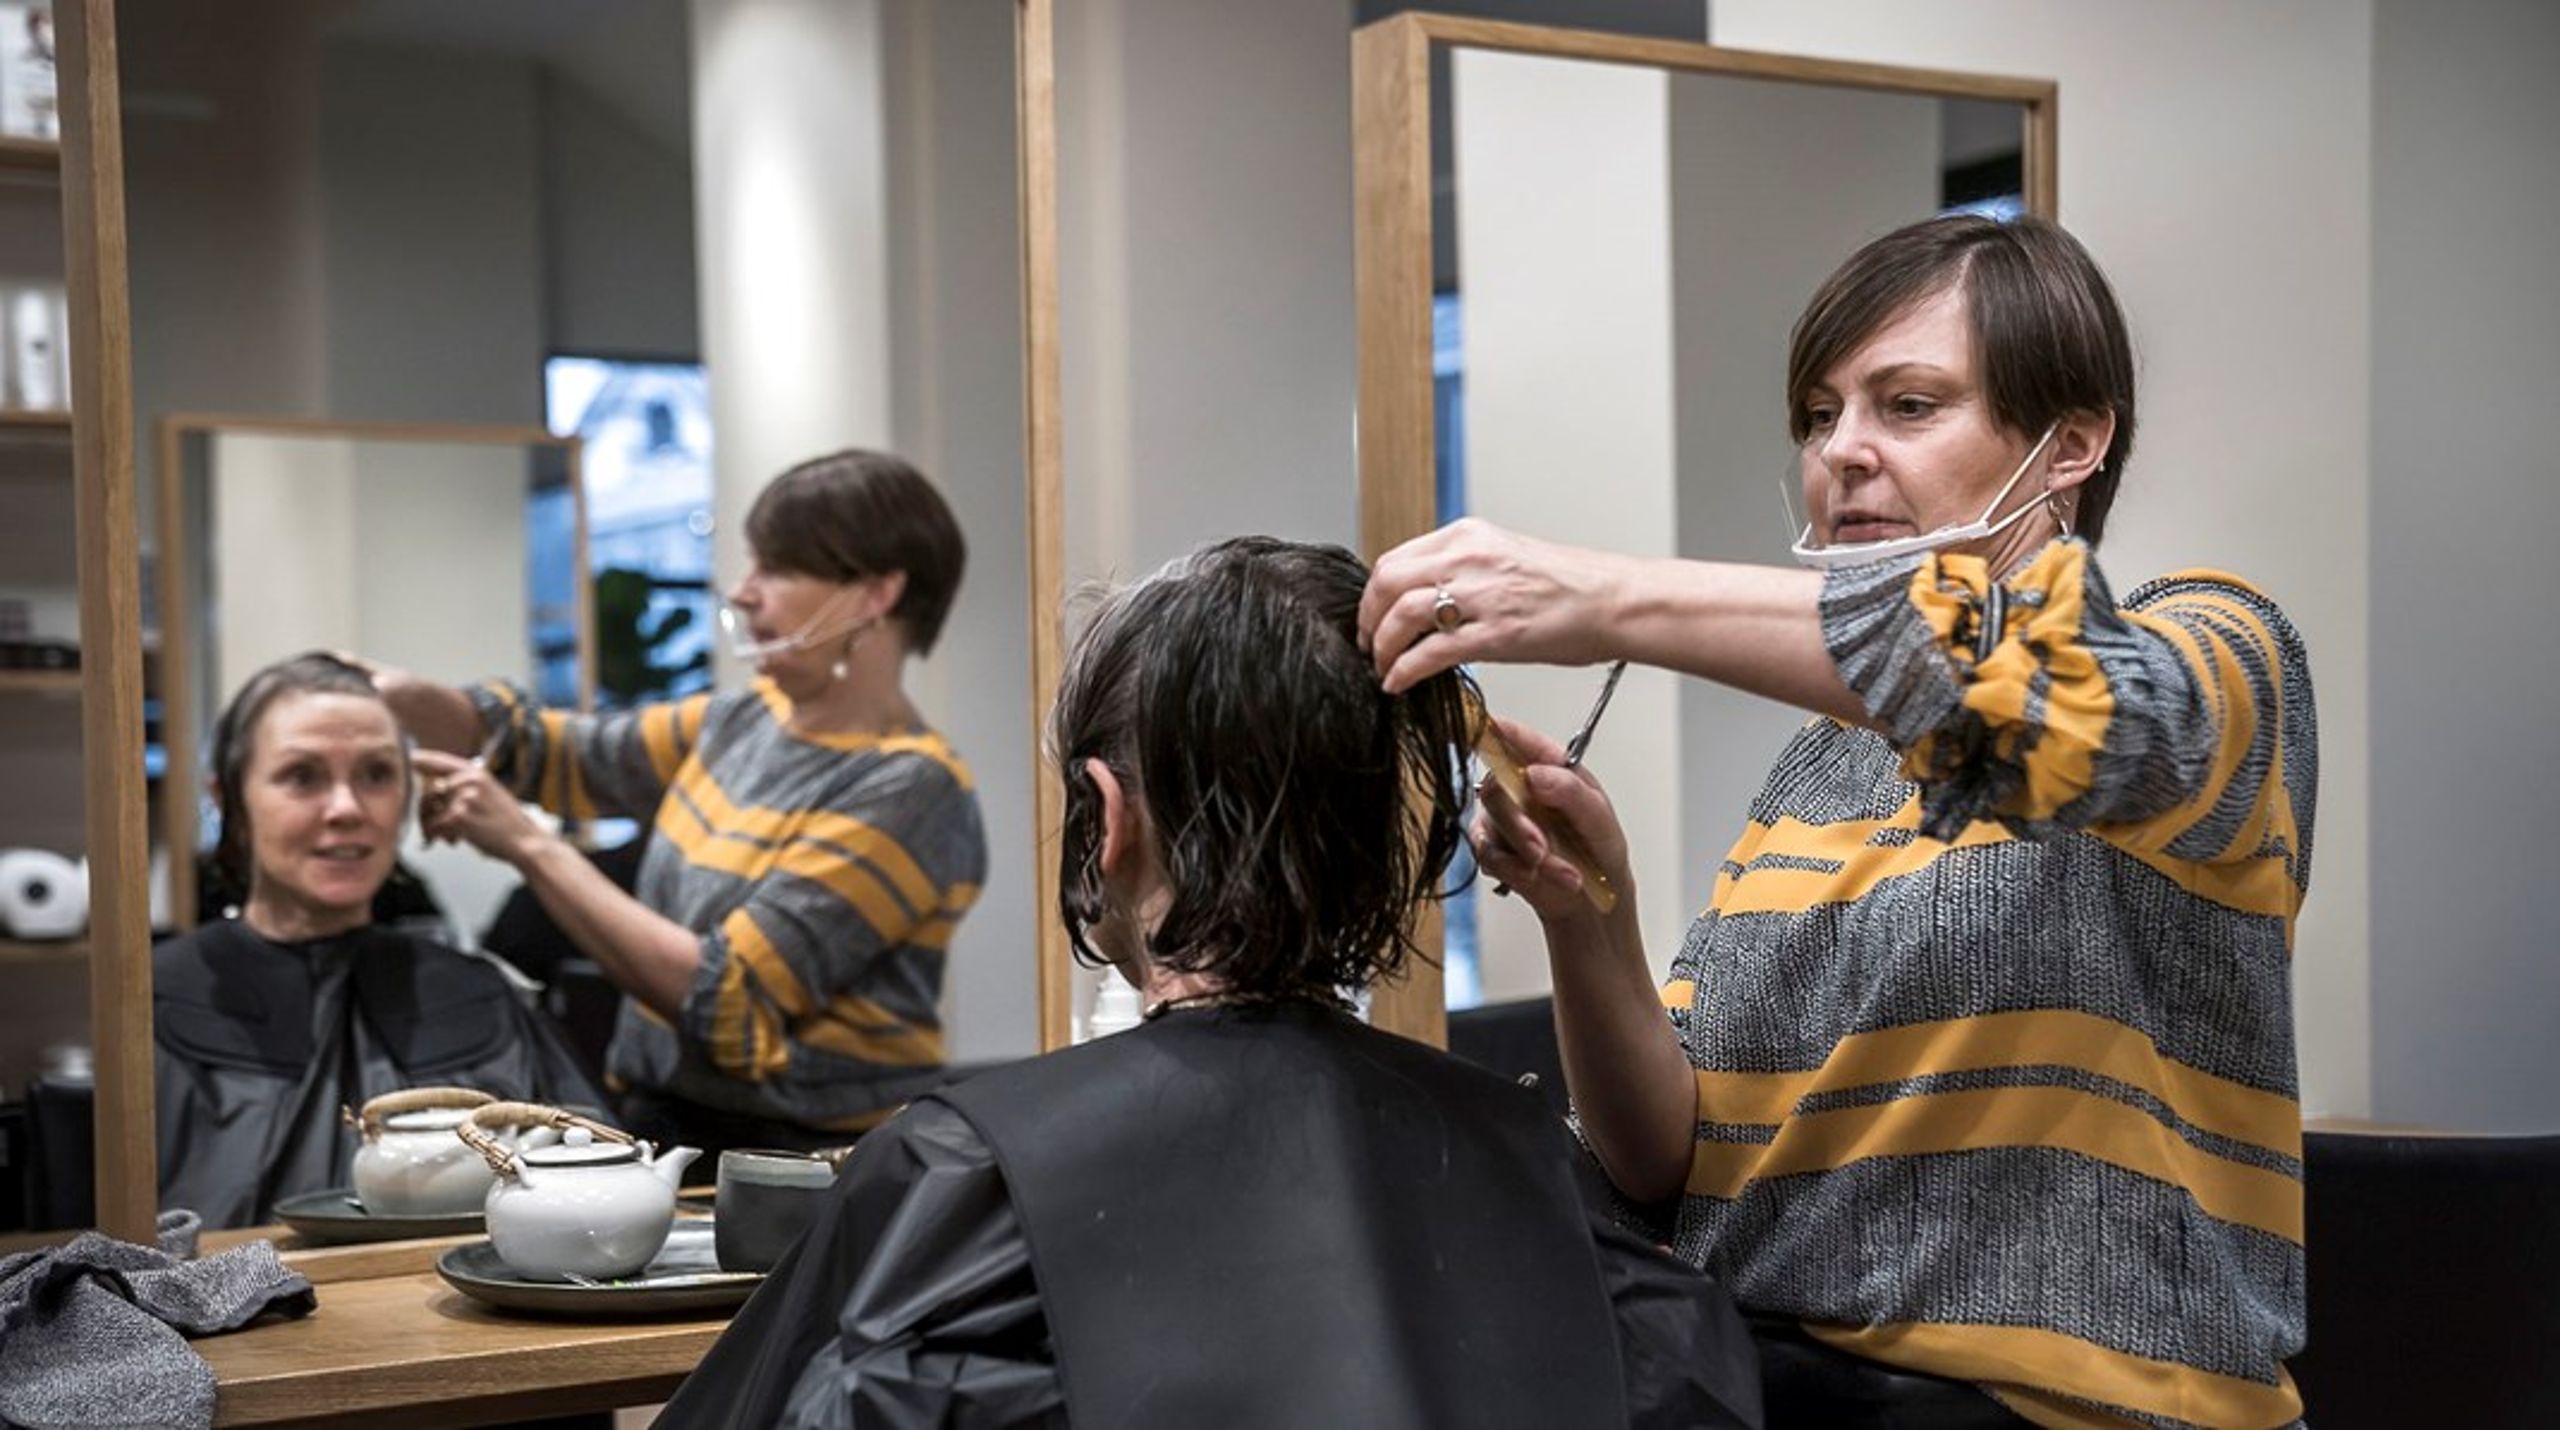 Professor Hans Jørn Kolmos undrer sig over, at frisører ikke er underlagt samme testkrav som kunderne. "Nogle af frisørerne har også kun hagevisir på, hvilket ikke hjælper særligt meget," siger han.